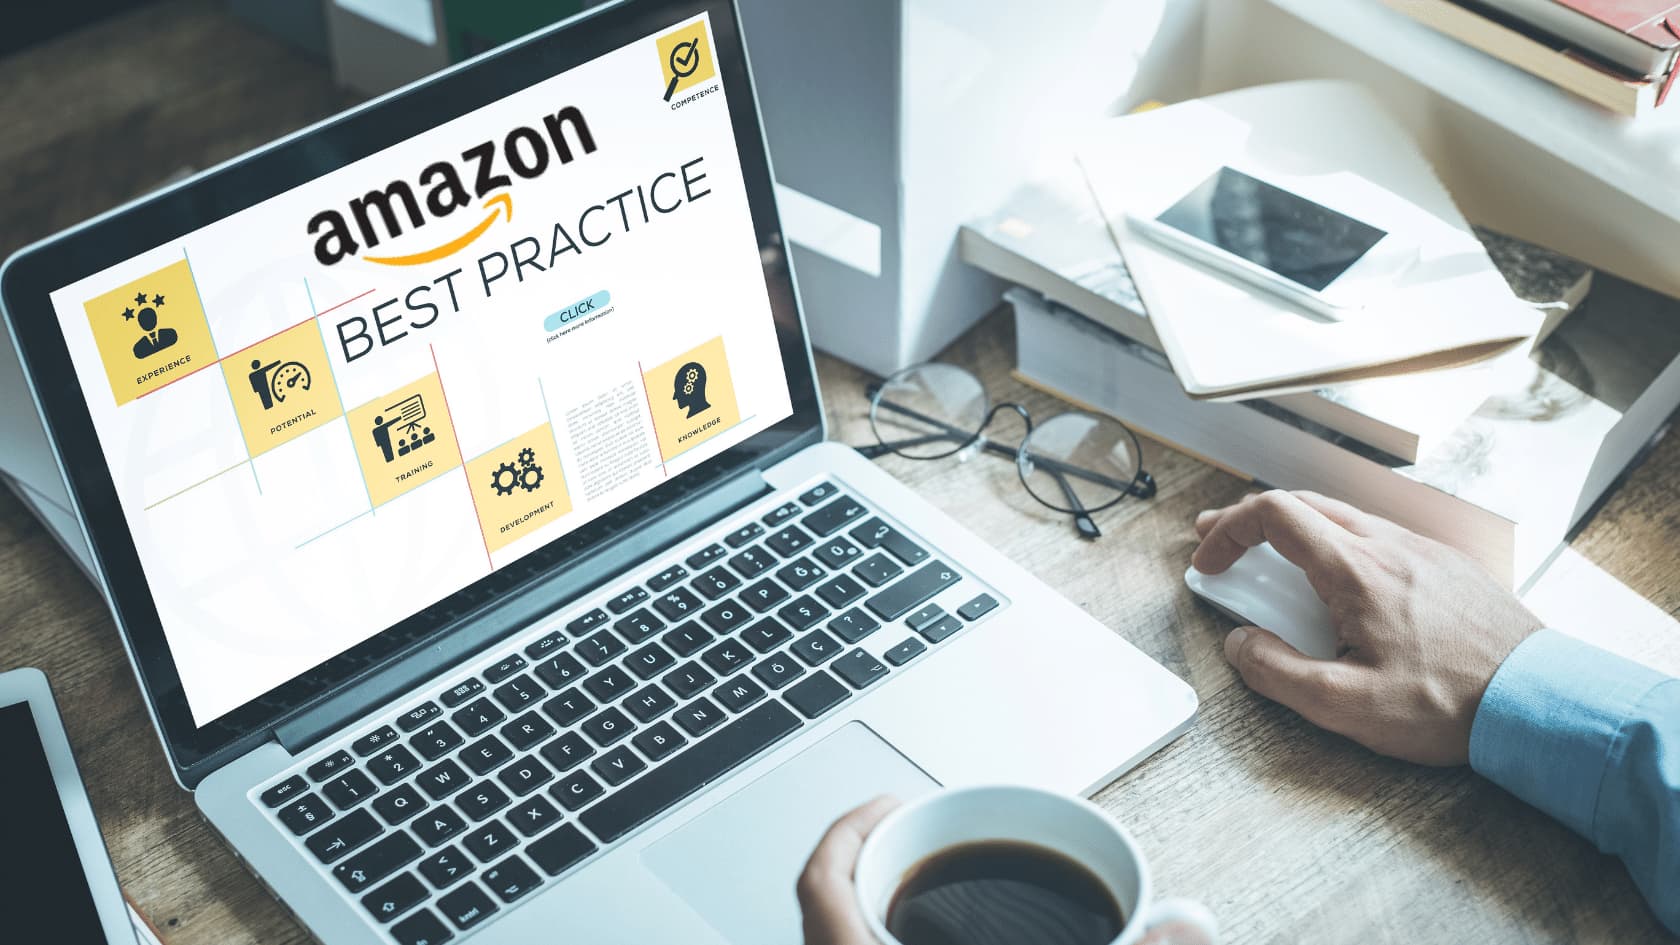 Amazon Best Practices